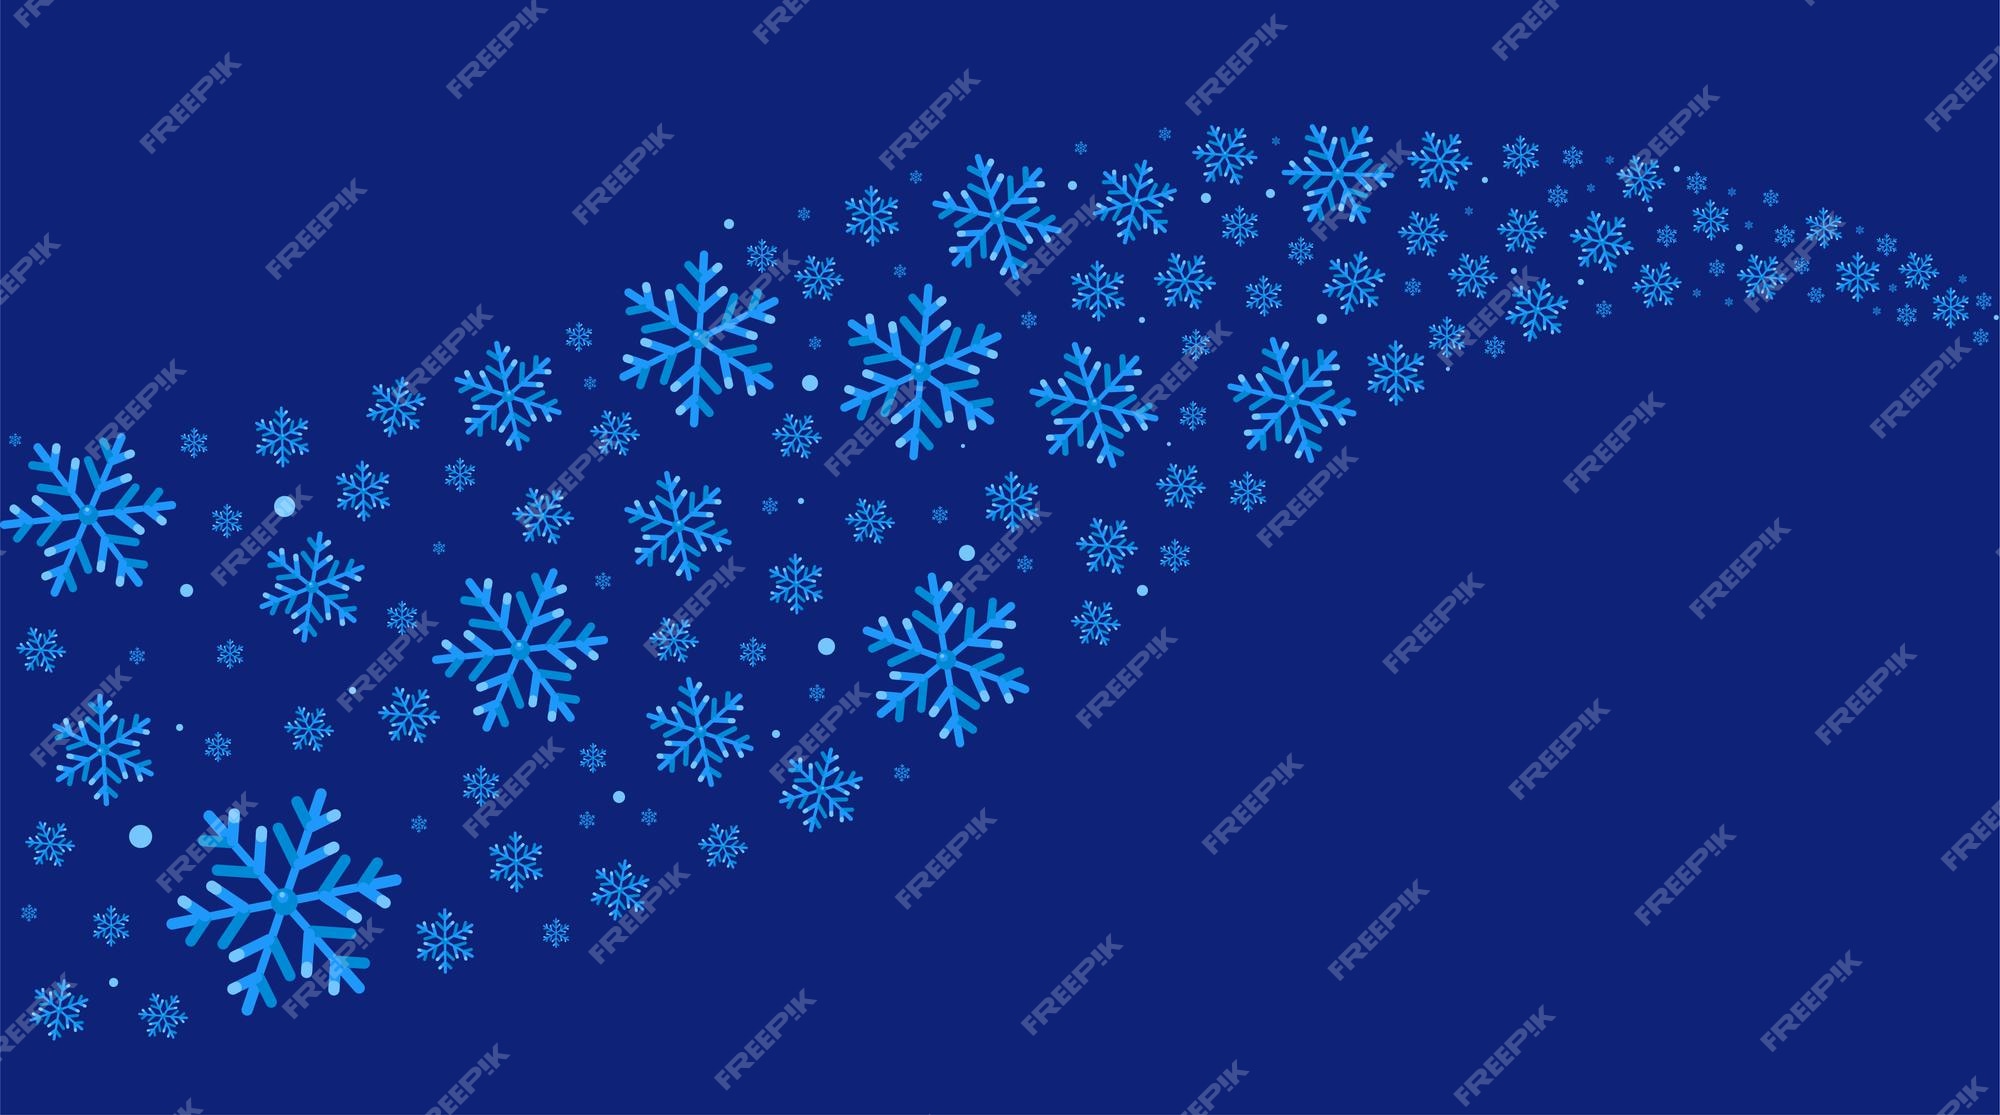 Nếu bạn yêu thích mùa đông và muốn có một hình nền đẳng cấp với sự kết hợp của màu xanh Royal Blue và tuyết phun sơn, thì Vector nền đông sẽ thỏa mãn sự mong đợi của bạn. Mang đến cảm giác ấm áp và sang trọng, bộ sưu tập hình nền này chắc chắn sẽ mang lại sự hài lòng cho bạn.